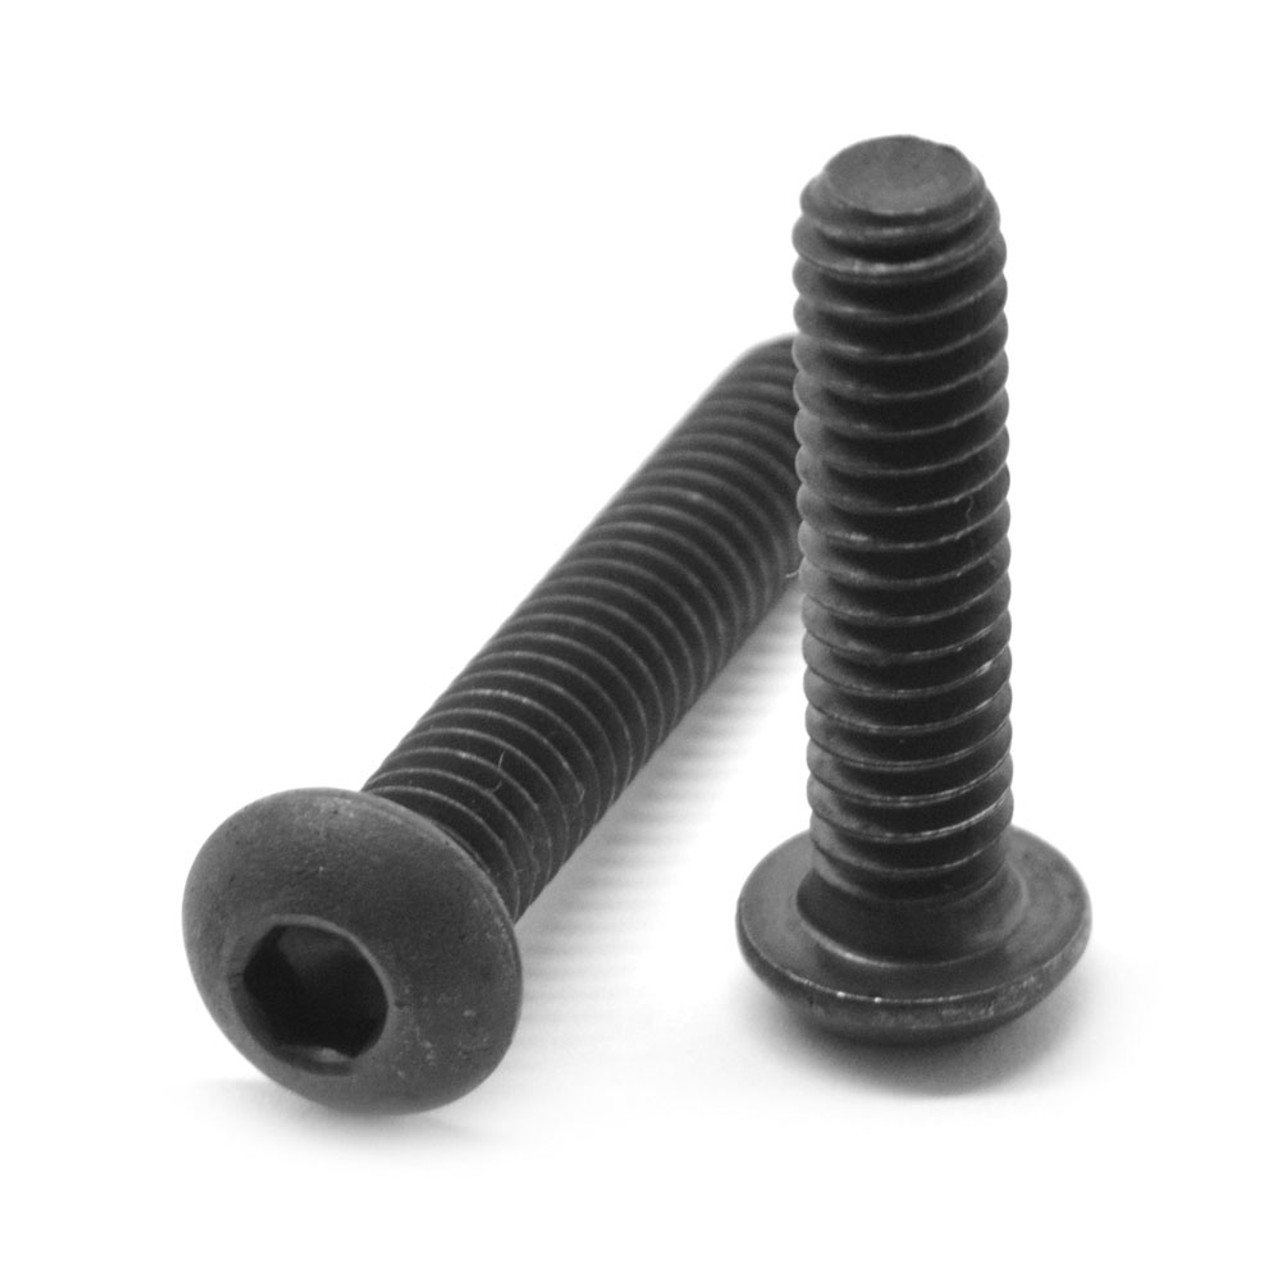 #3-48 x 1/2" (FT) Coarse Thread Socket Button Head Cap Screw Alloy Steel Black Oxide